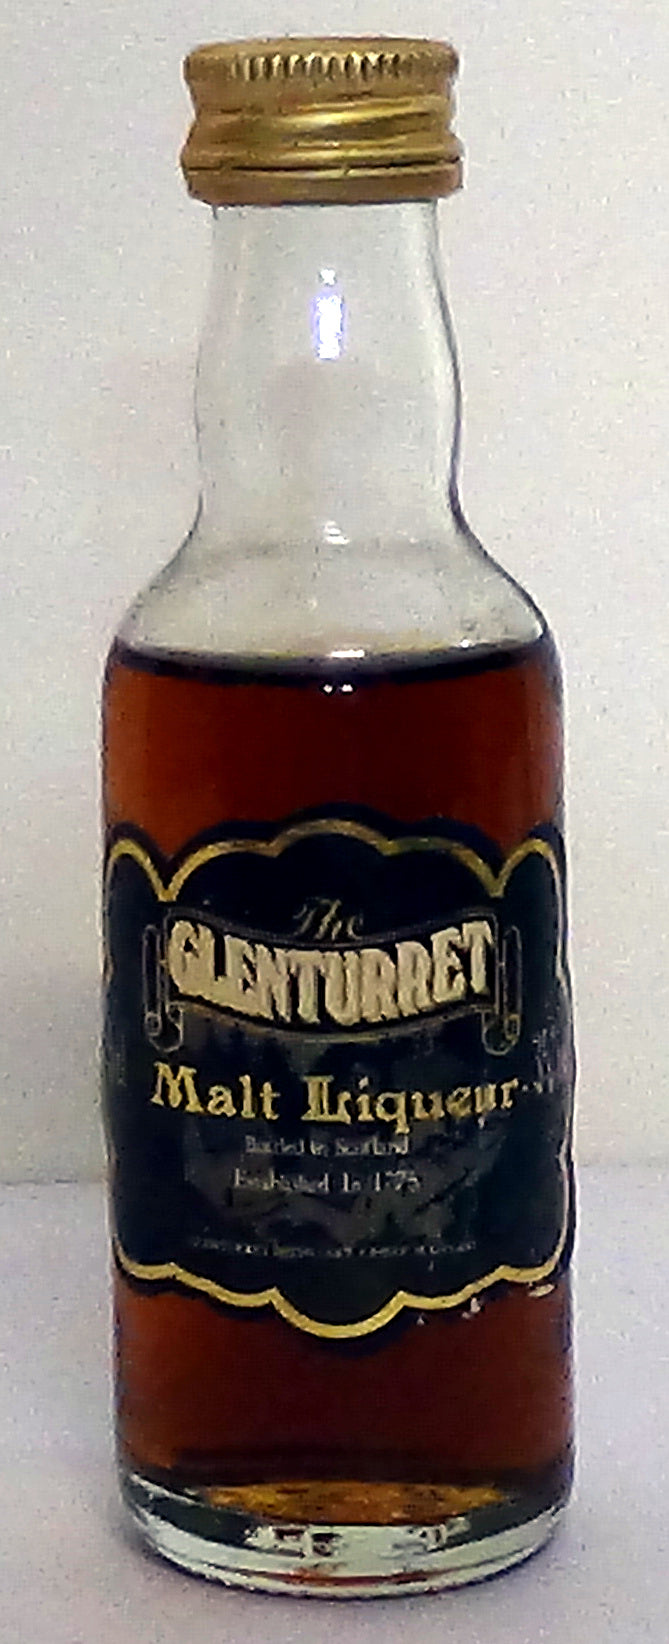 1980’s The Glenturret Malt Liqueur 4cl